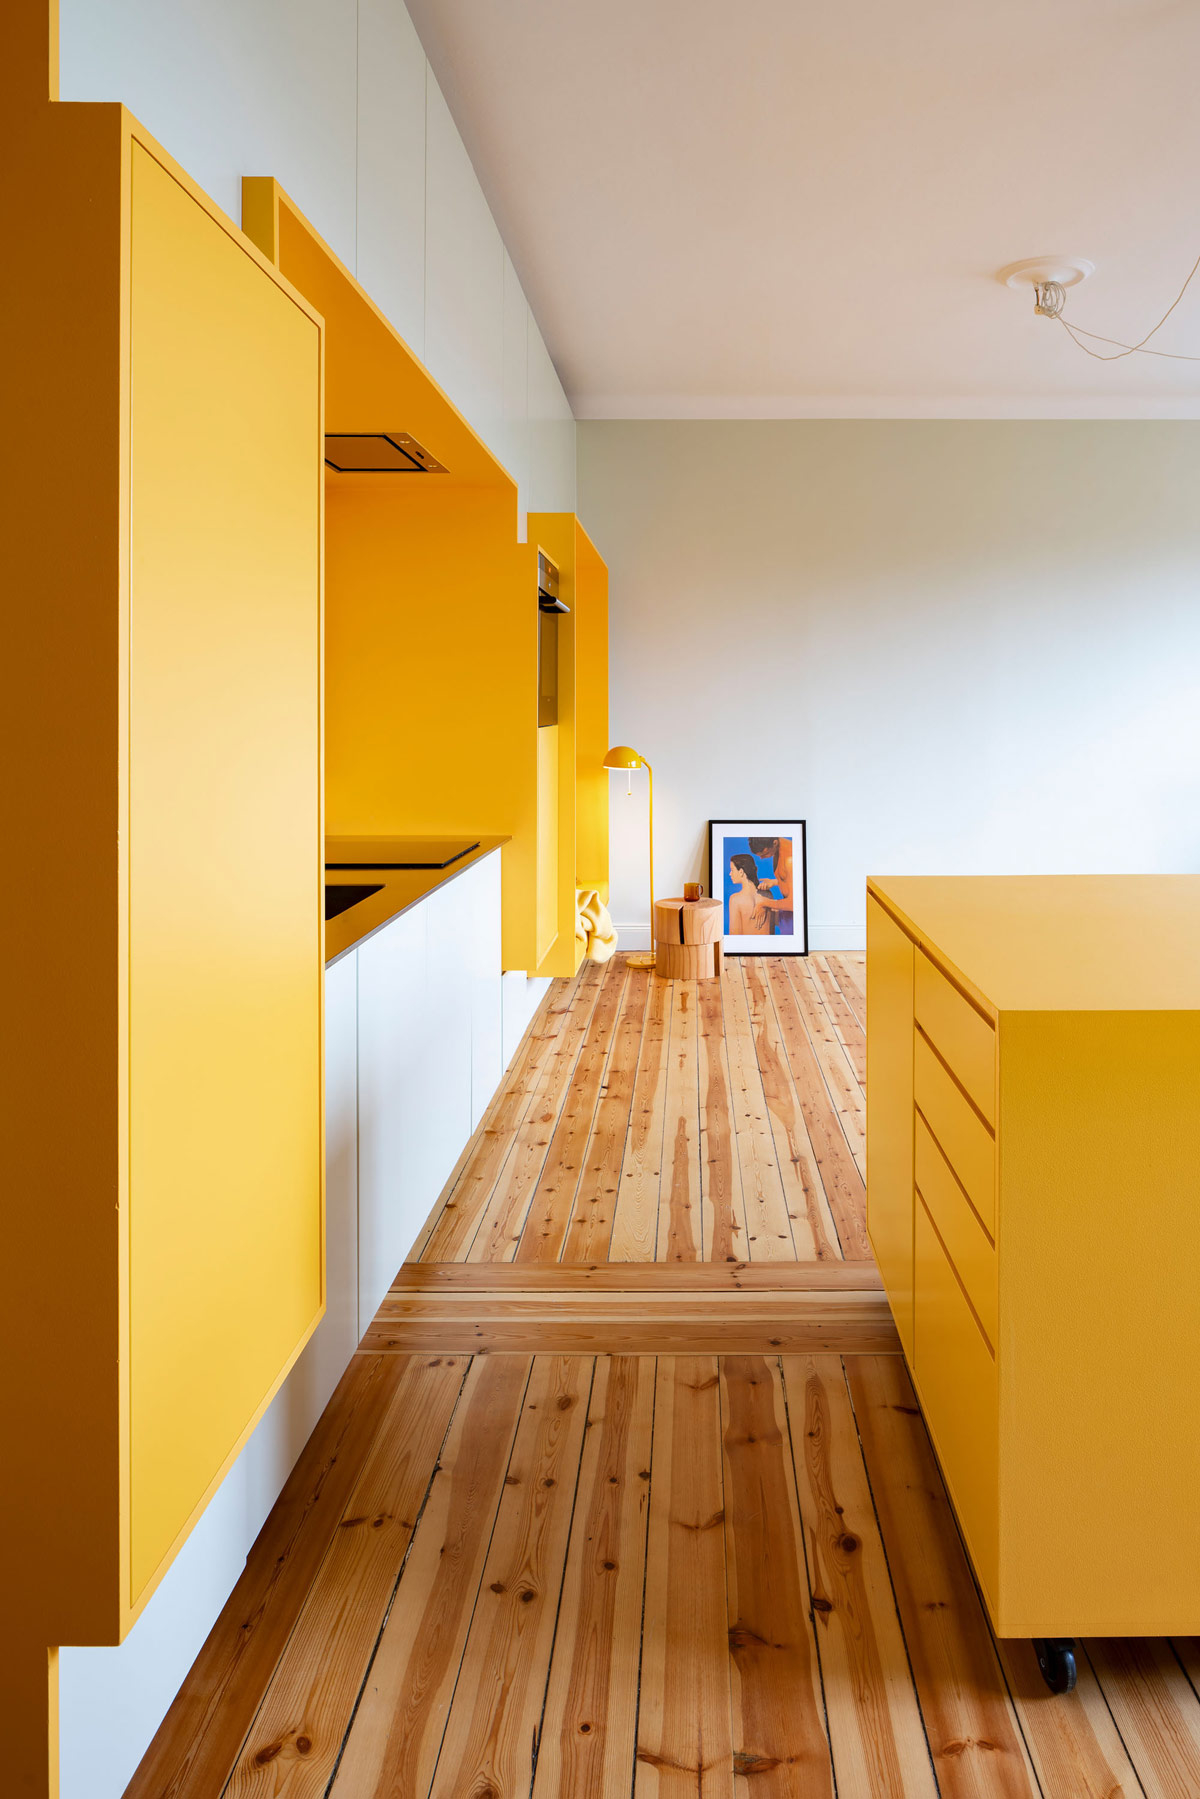 Sàn căn hộ màu vàng được lát bằng gỗ thông 